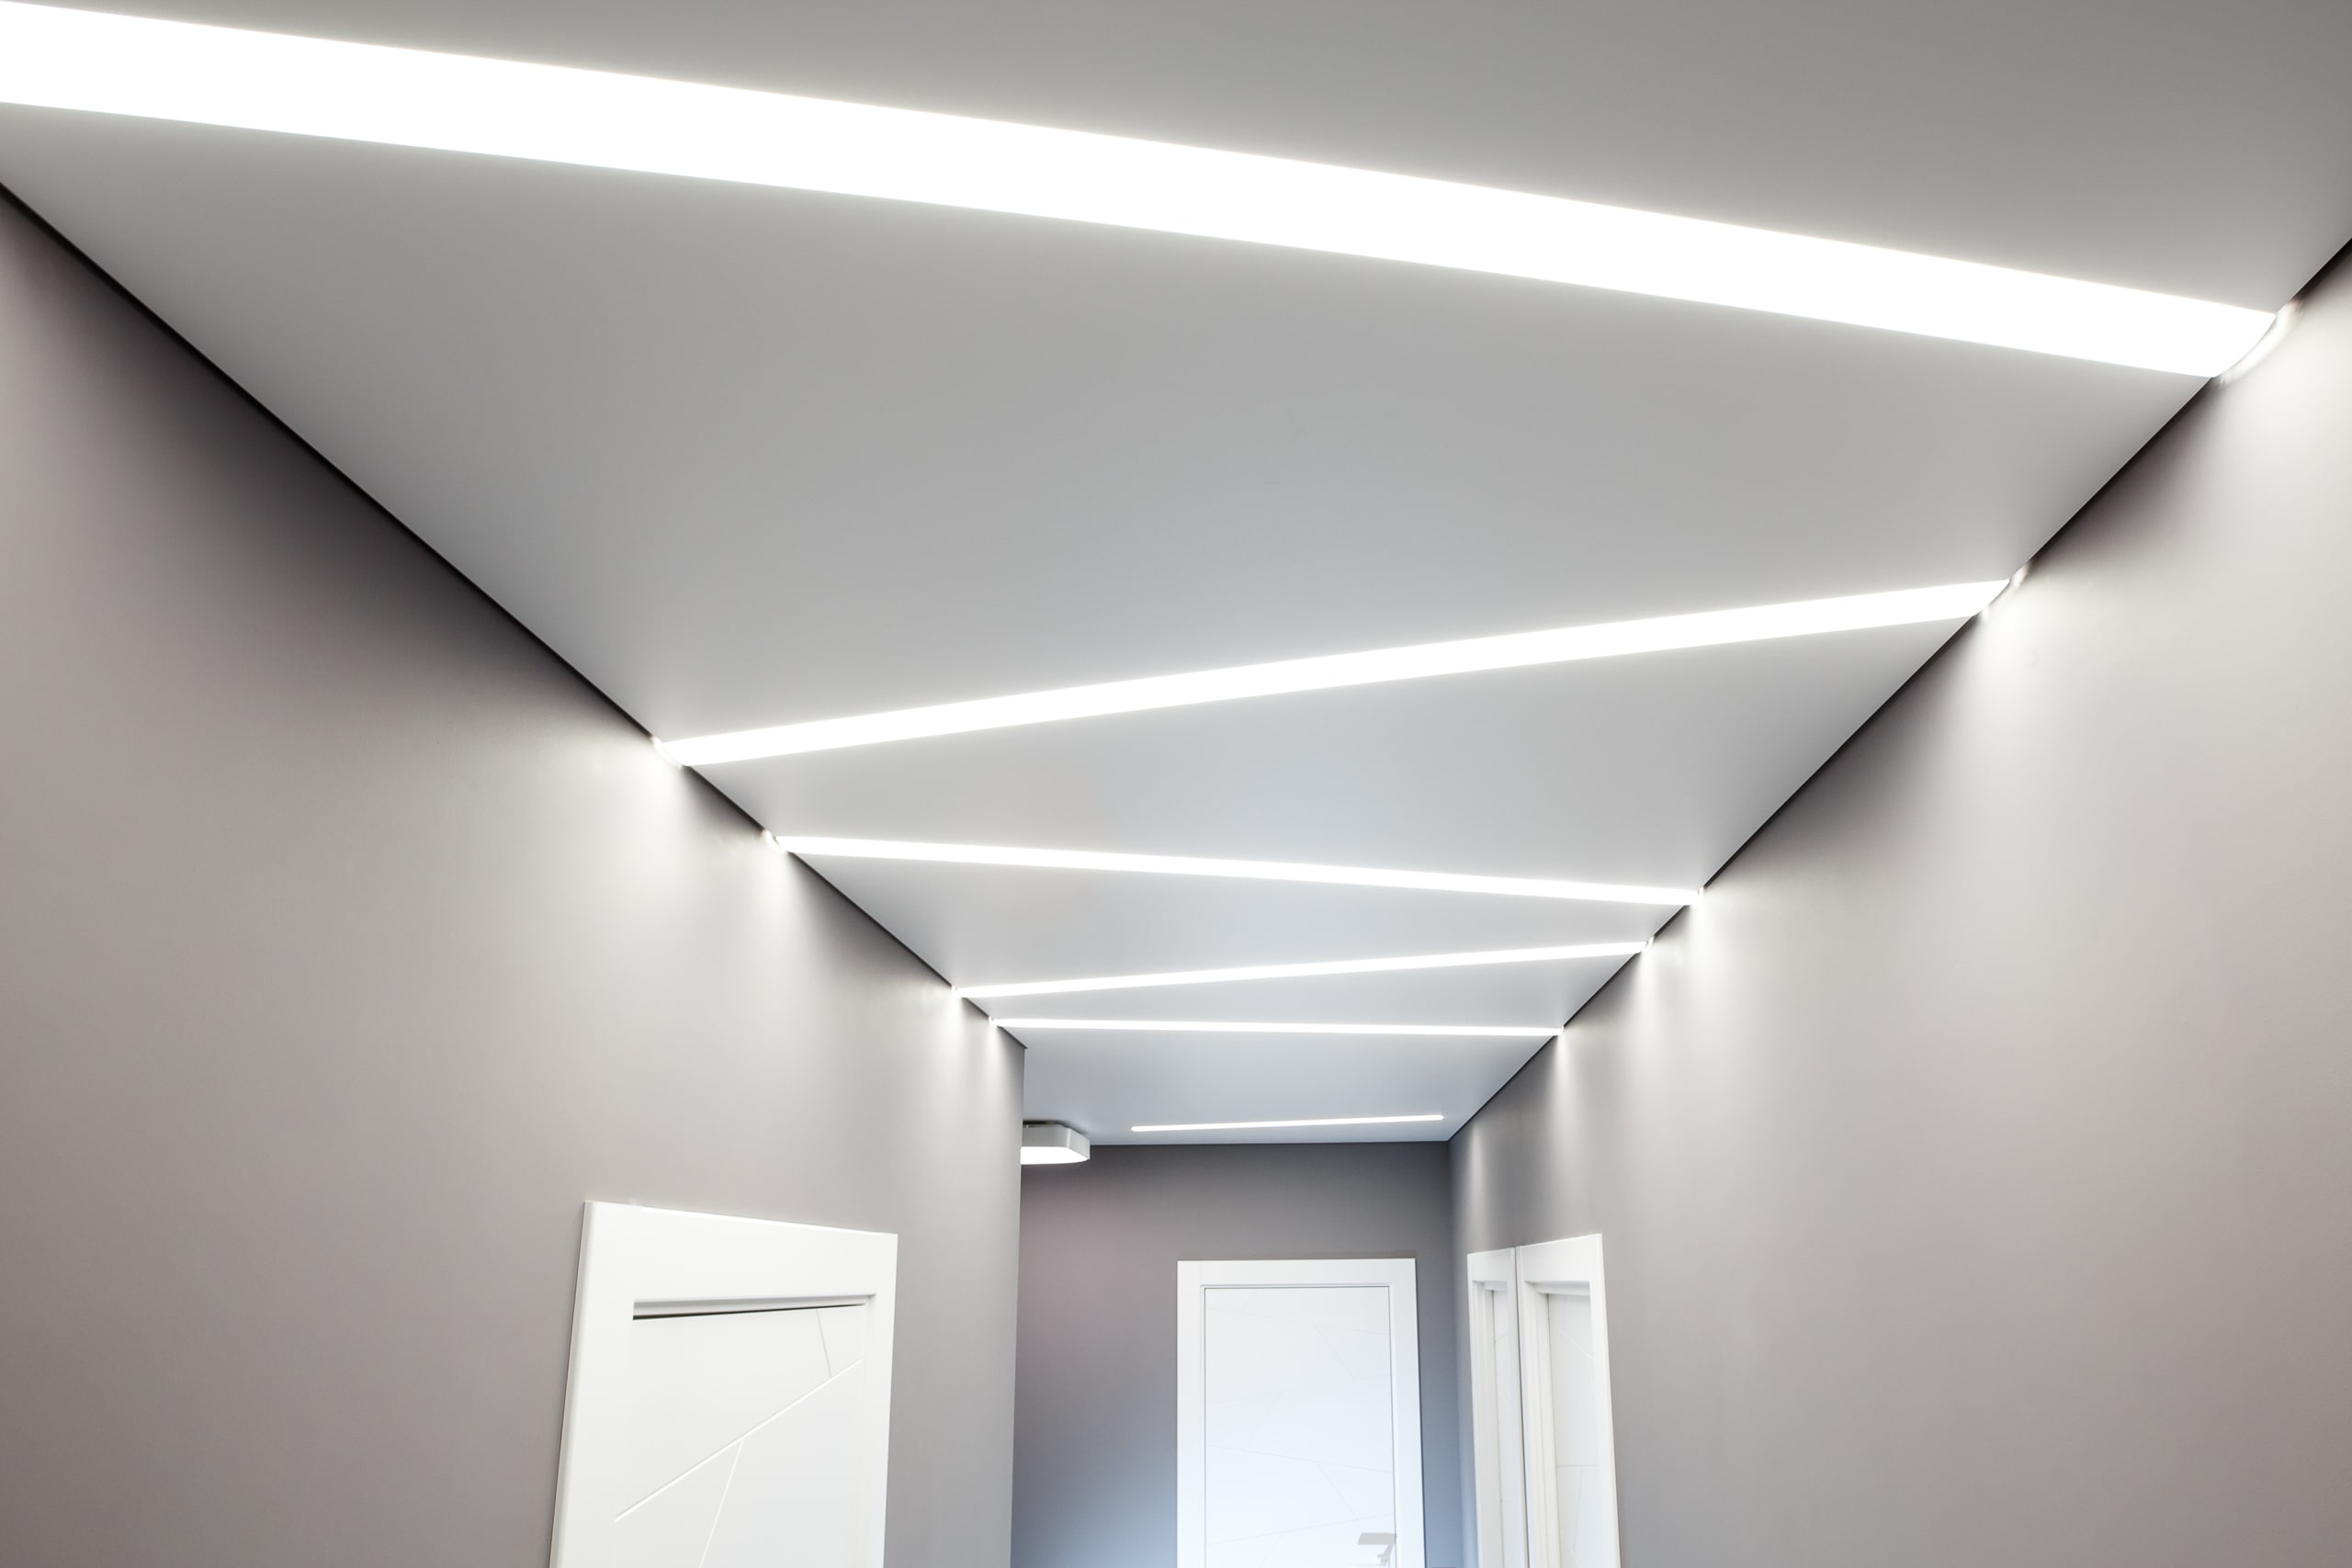 Натяжной потолок с подсветкой светодиодной лентой: многообразие возможностей и стильное решение для интерьера